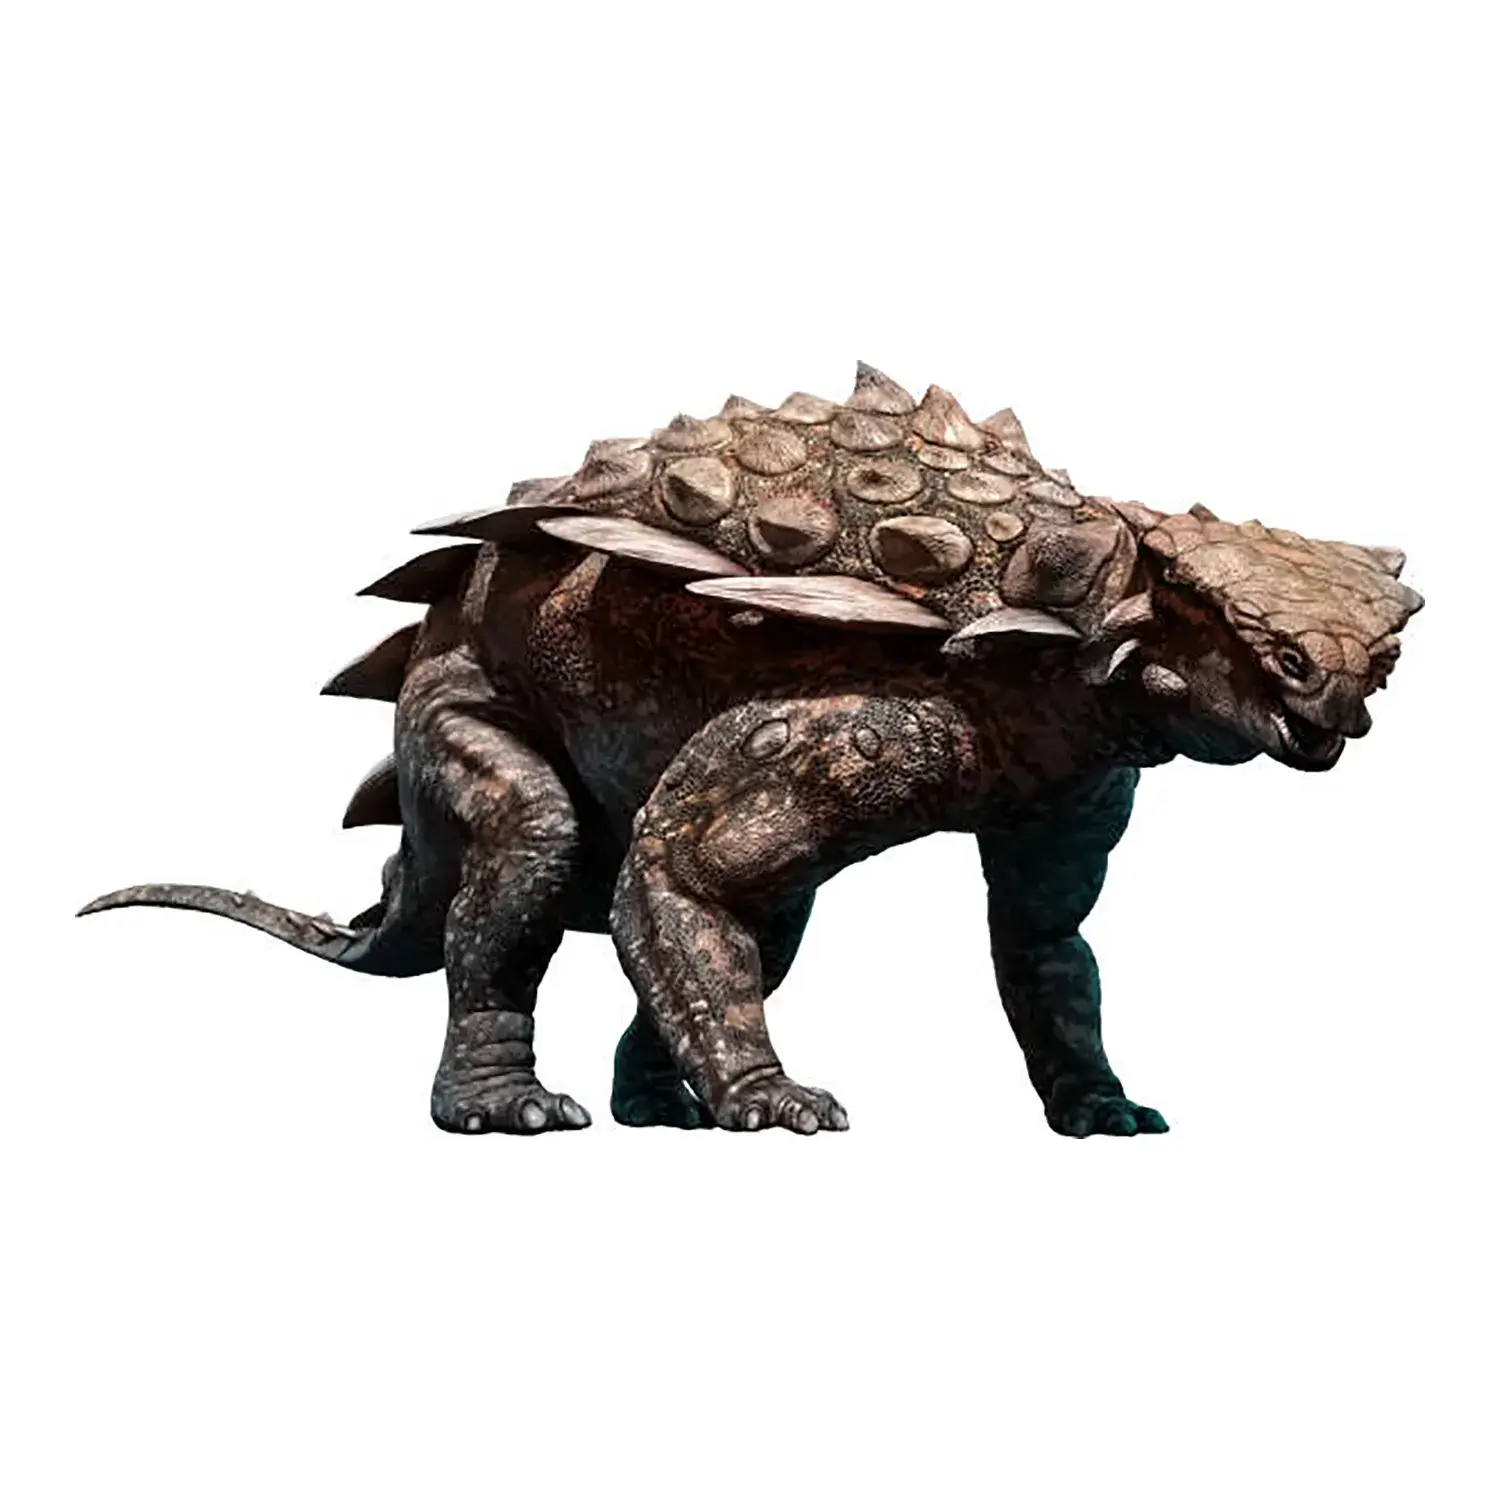 ガーゴイレオサウルス | 恐竜博物館.web